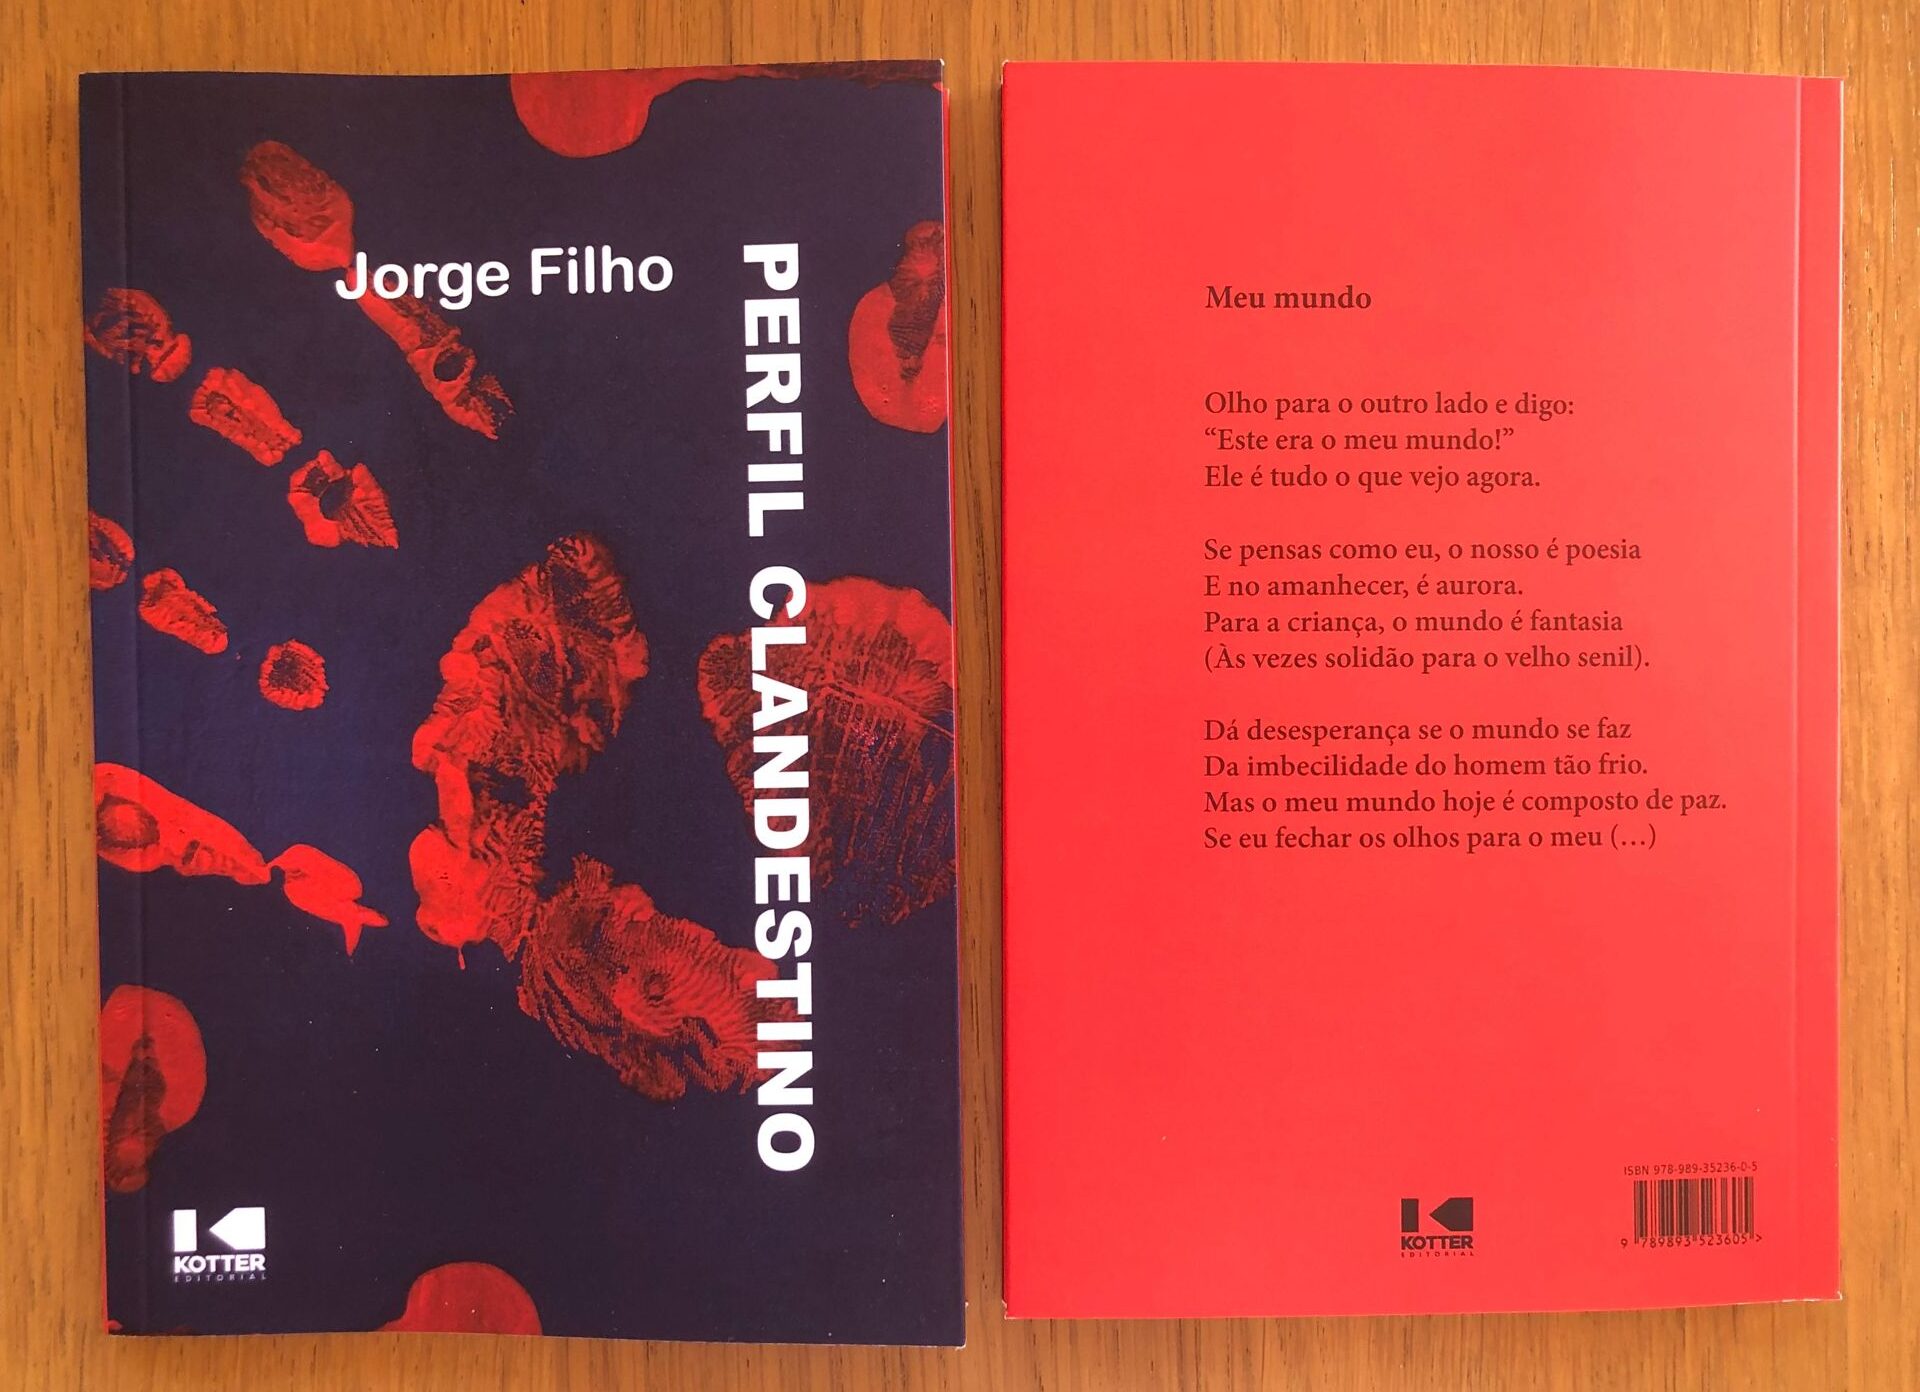 Perfil Clandestino: Jorge Filho recorre à poesia como forma de resistência em seu primeiro livro